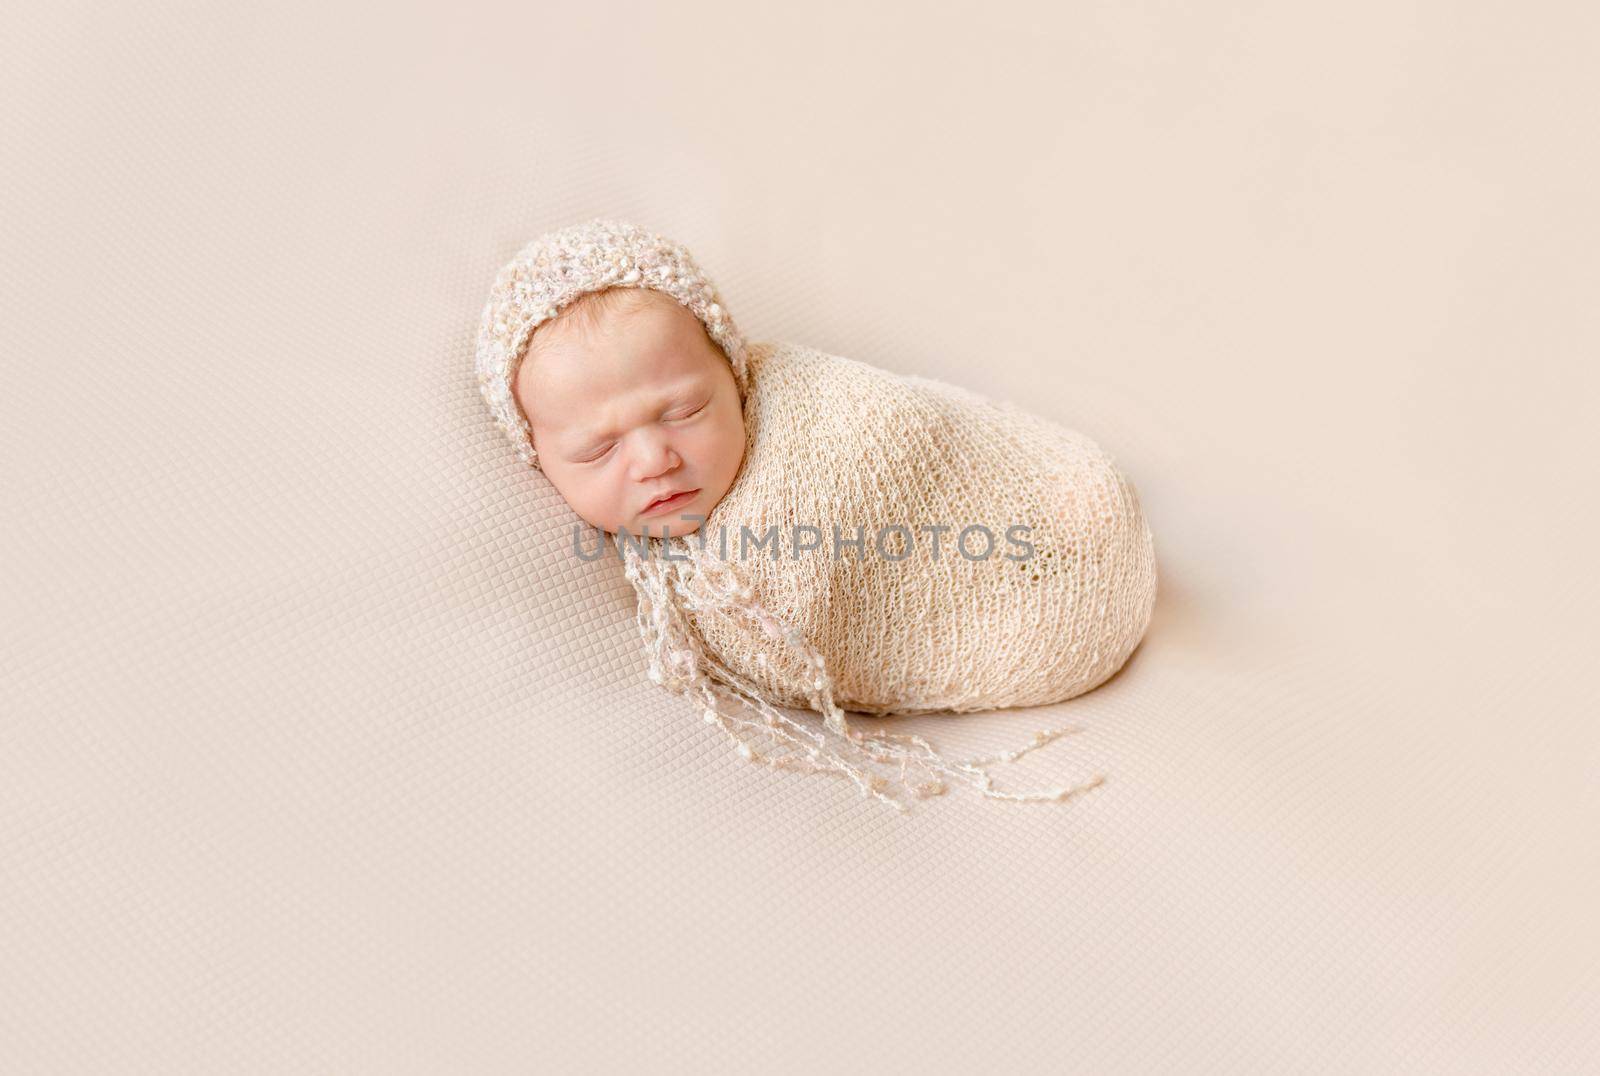 lovely wrapped baby in hat sleeping on a beige blanket by tan4ikk1